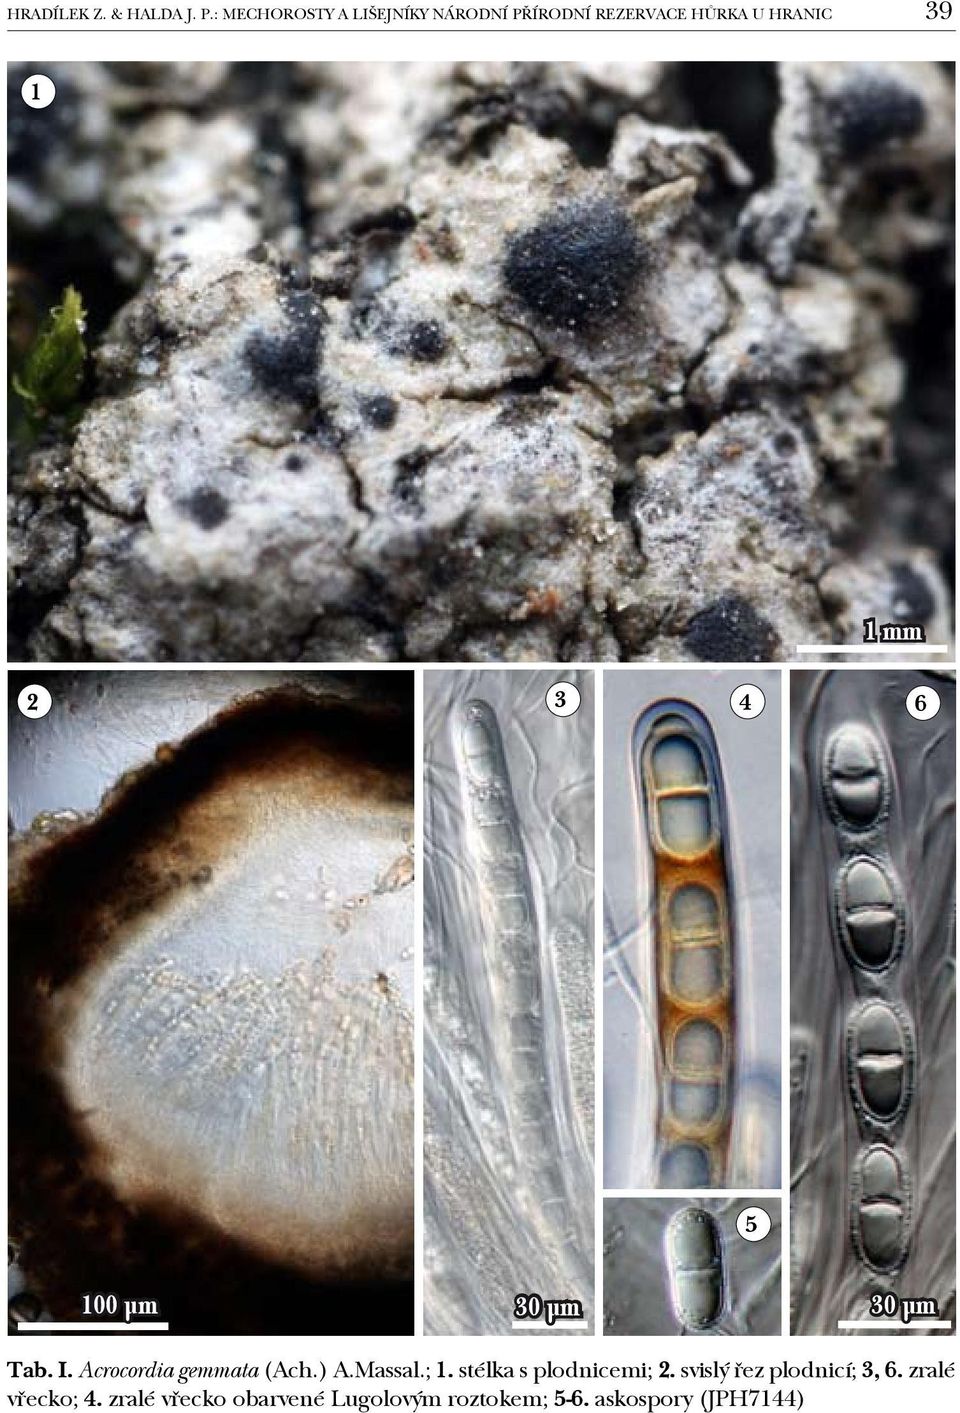 3 4 6 5 100 µm 30 µm 30 µm Tab. I. Acrocordia gemmata (Ach.) A.Massal.; 1.